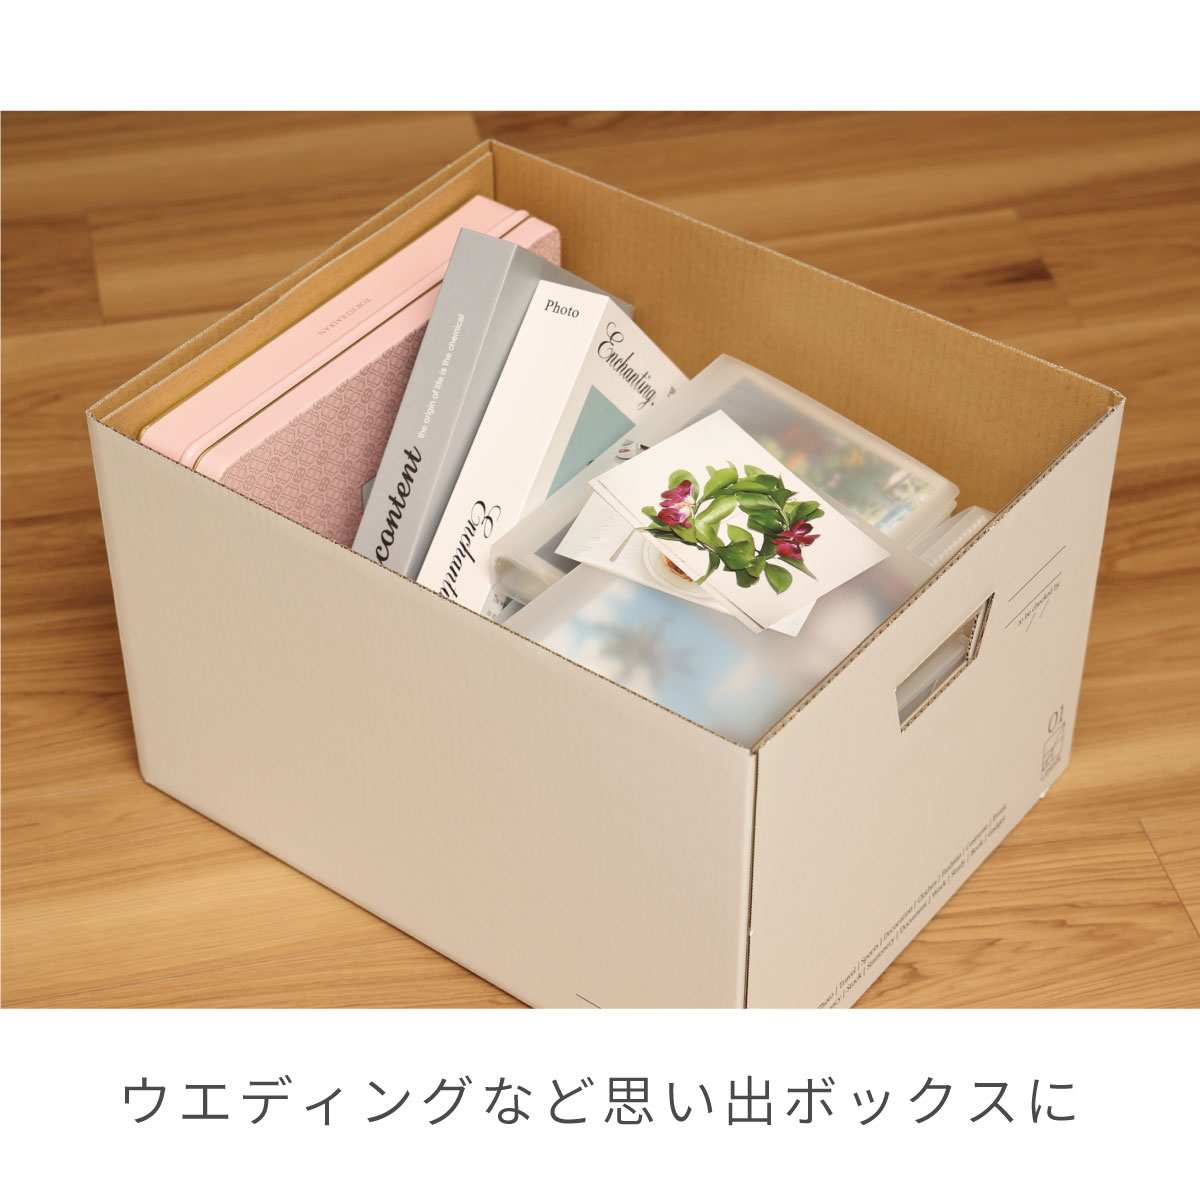 アドバイザーズボックス 3個組 お片付けコンシェルジュ 魔法のボックス A4ファイル 収納 ケース フタ付き ダンボール 段ボール クラフトボックス  日本製